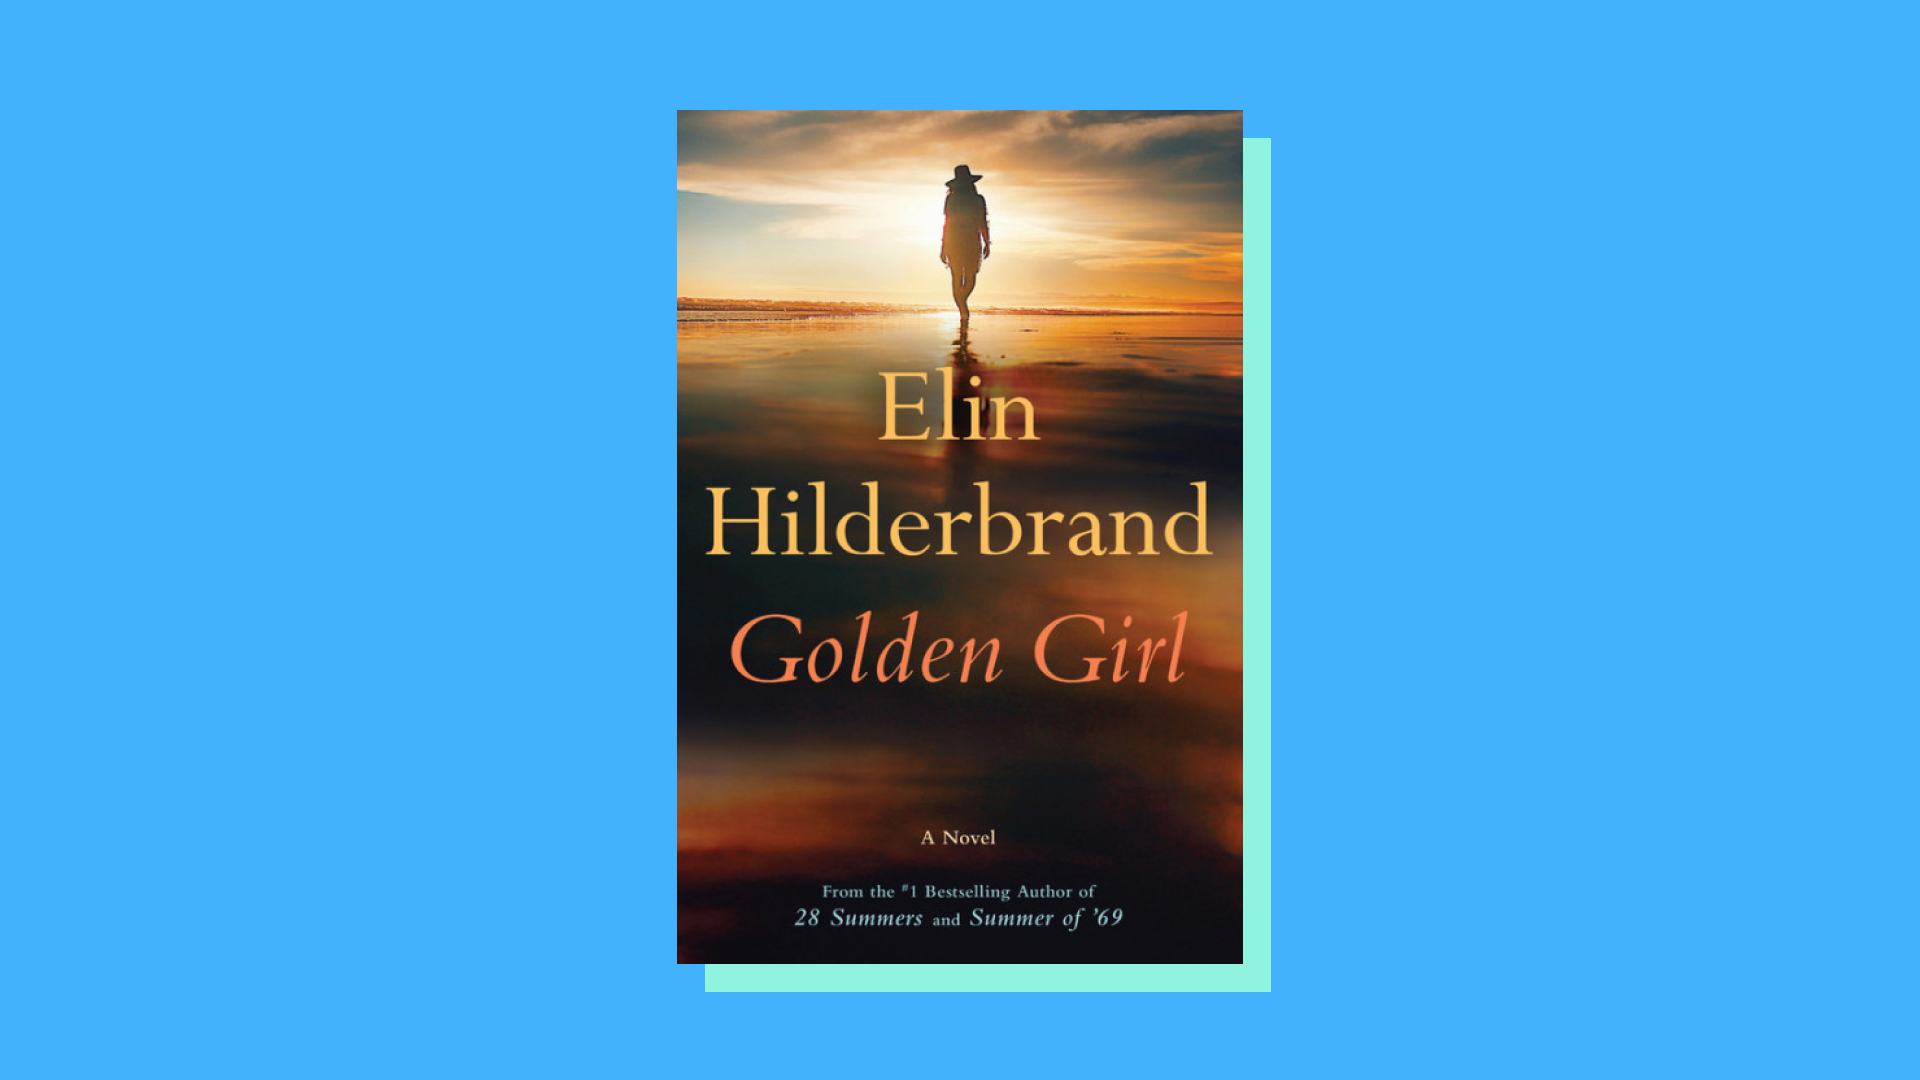 “Golden Girl” by Elin Hilderbrand